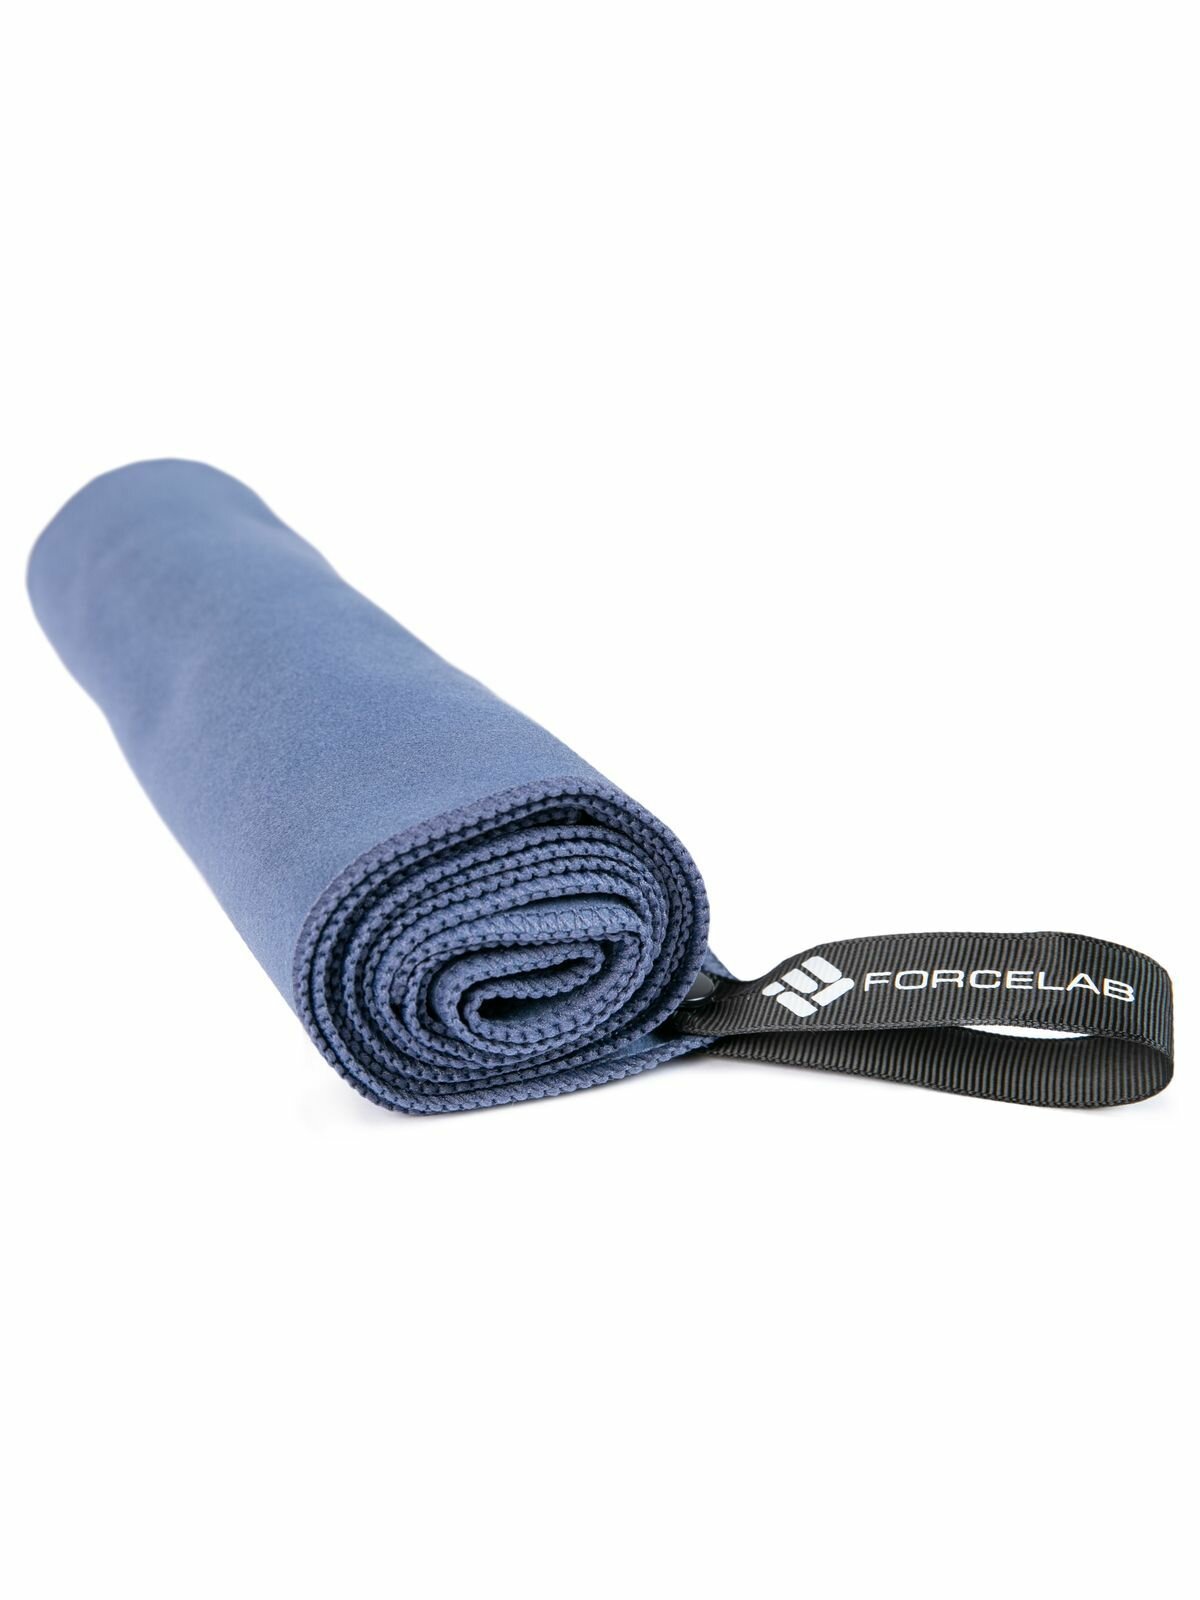 Полотенце FORCELAB маленькое спортивное быстросохнущее мягкое из микрофибры для бассейна, тренировок, фитнеса, спорта, для рук размер 40х80, темно-синее